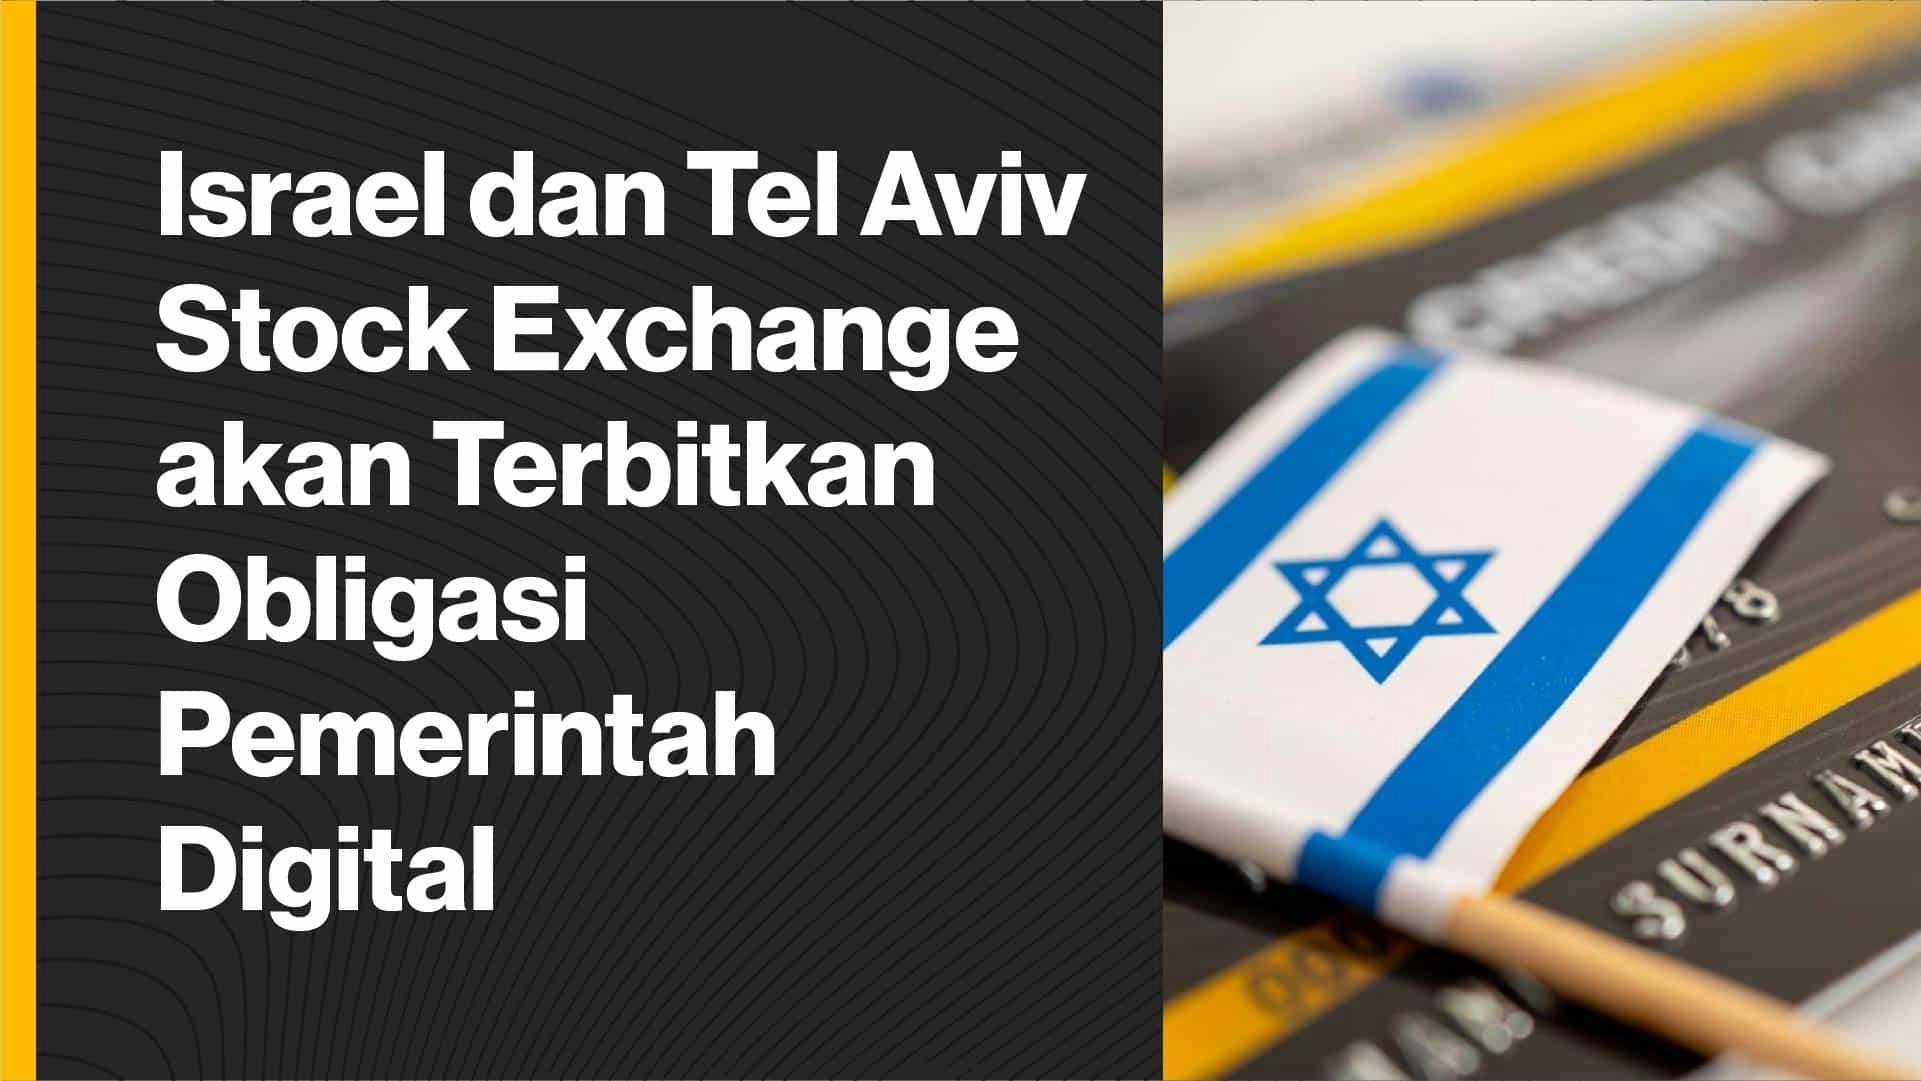 Tujuan dari pemerintah Israel dan TASE adalah untuk mempermudah proses, mengurangi biaya, dan mempersingkat durasi penerbitan dan kliring obligasi pemerintah. (Foto CDI)